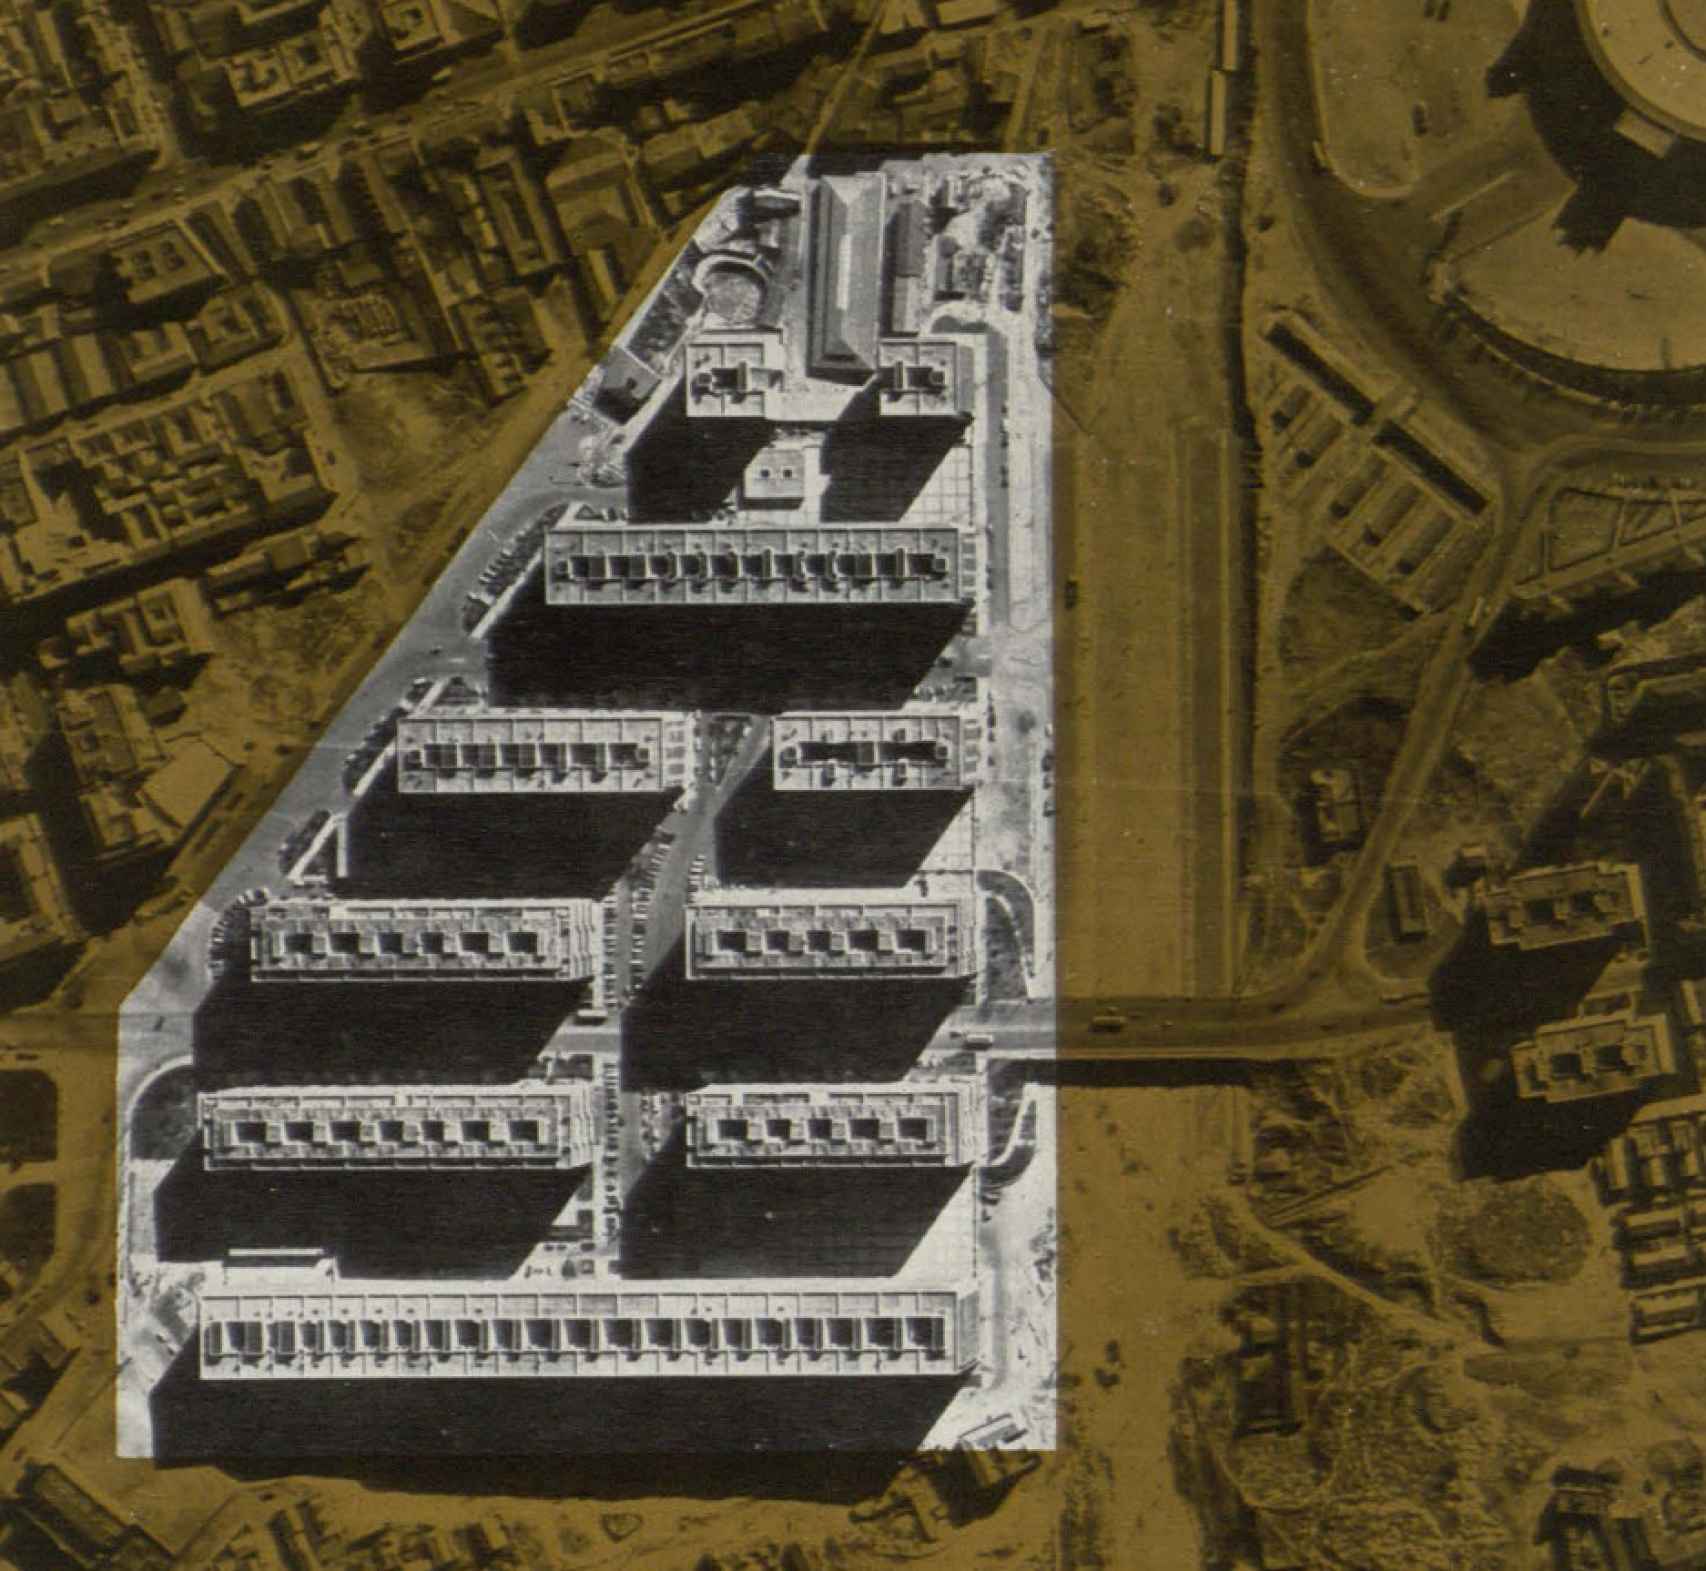 Vista aérea de La Colmena, en una imagen publicada en la revista Arquitectura en 1962.